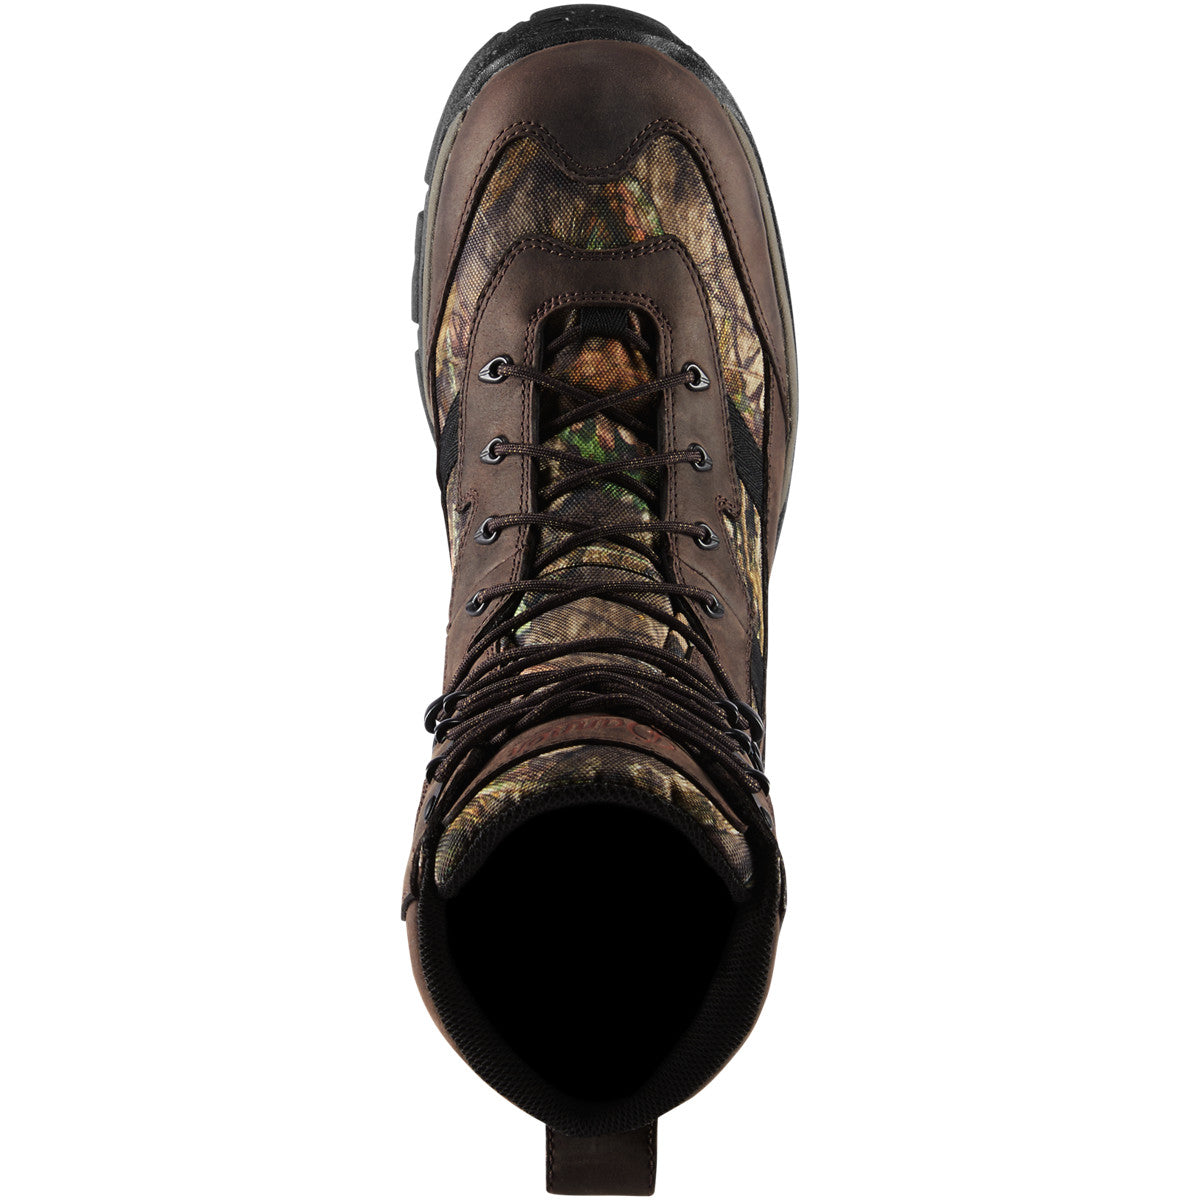 Danner Men's Alsea 8" WP 1000G Insulated Hunt Boot - Mossy Oak - 46724  - Overlook Boots